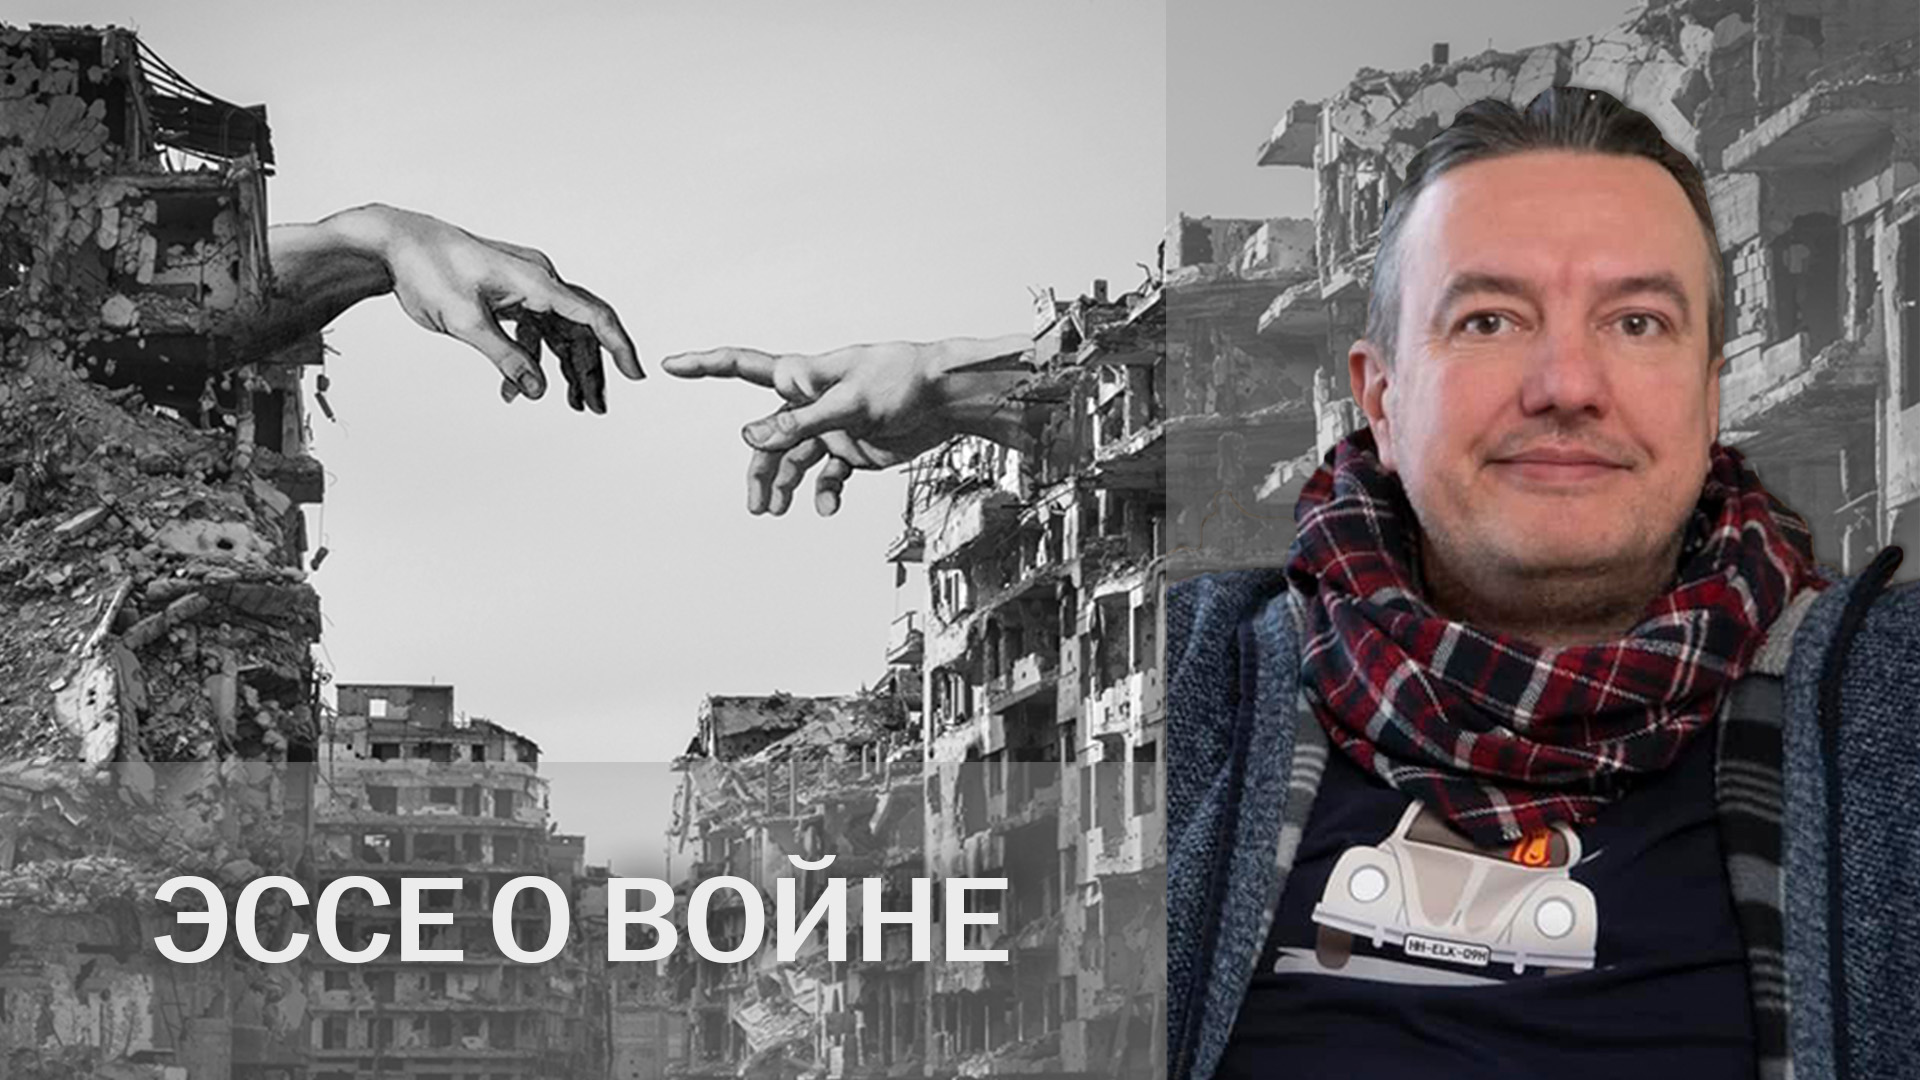 ЭССЕ О ВОЙНЕ: Андрей Пермяков — прощай, с оружием!